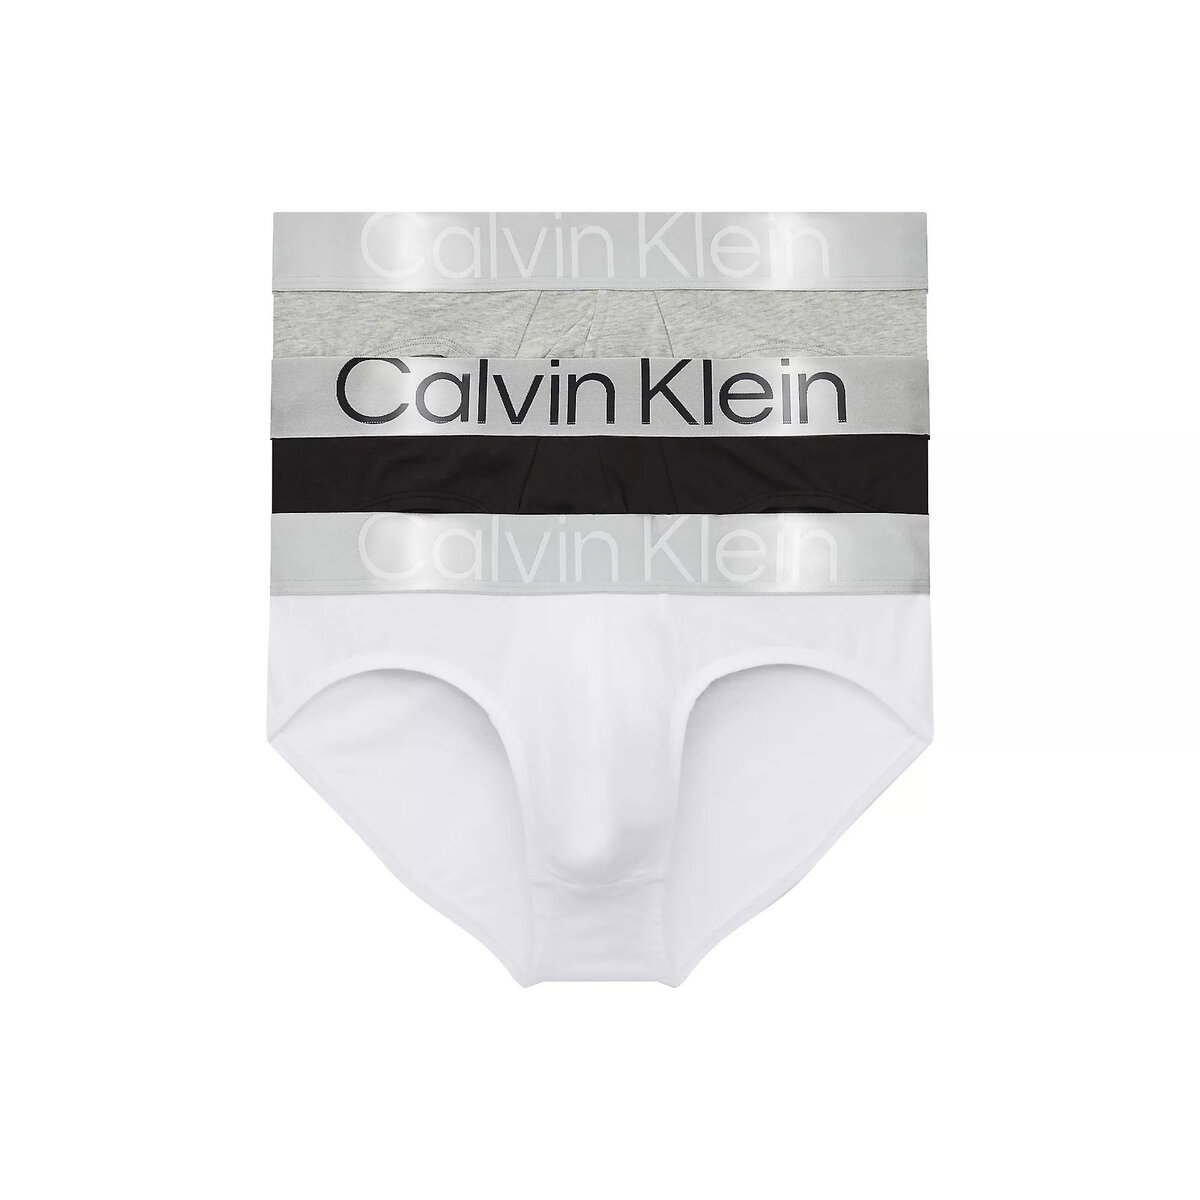 Bio bavlněné pánské slipy - Calvin Klein (3 ks) i652_000NB3129AMPI002